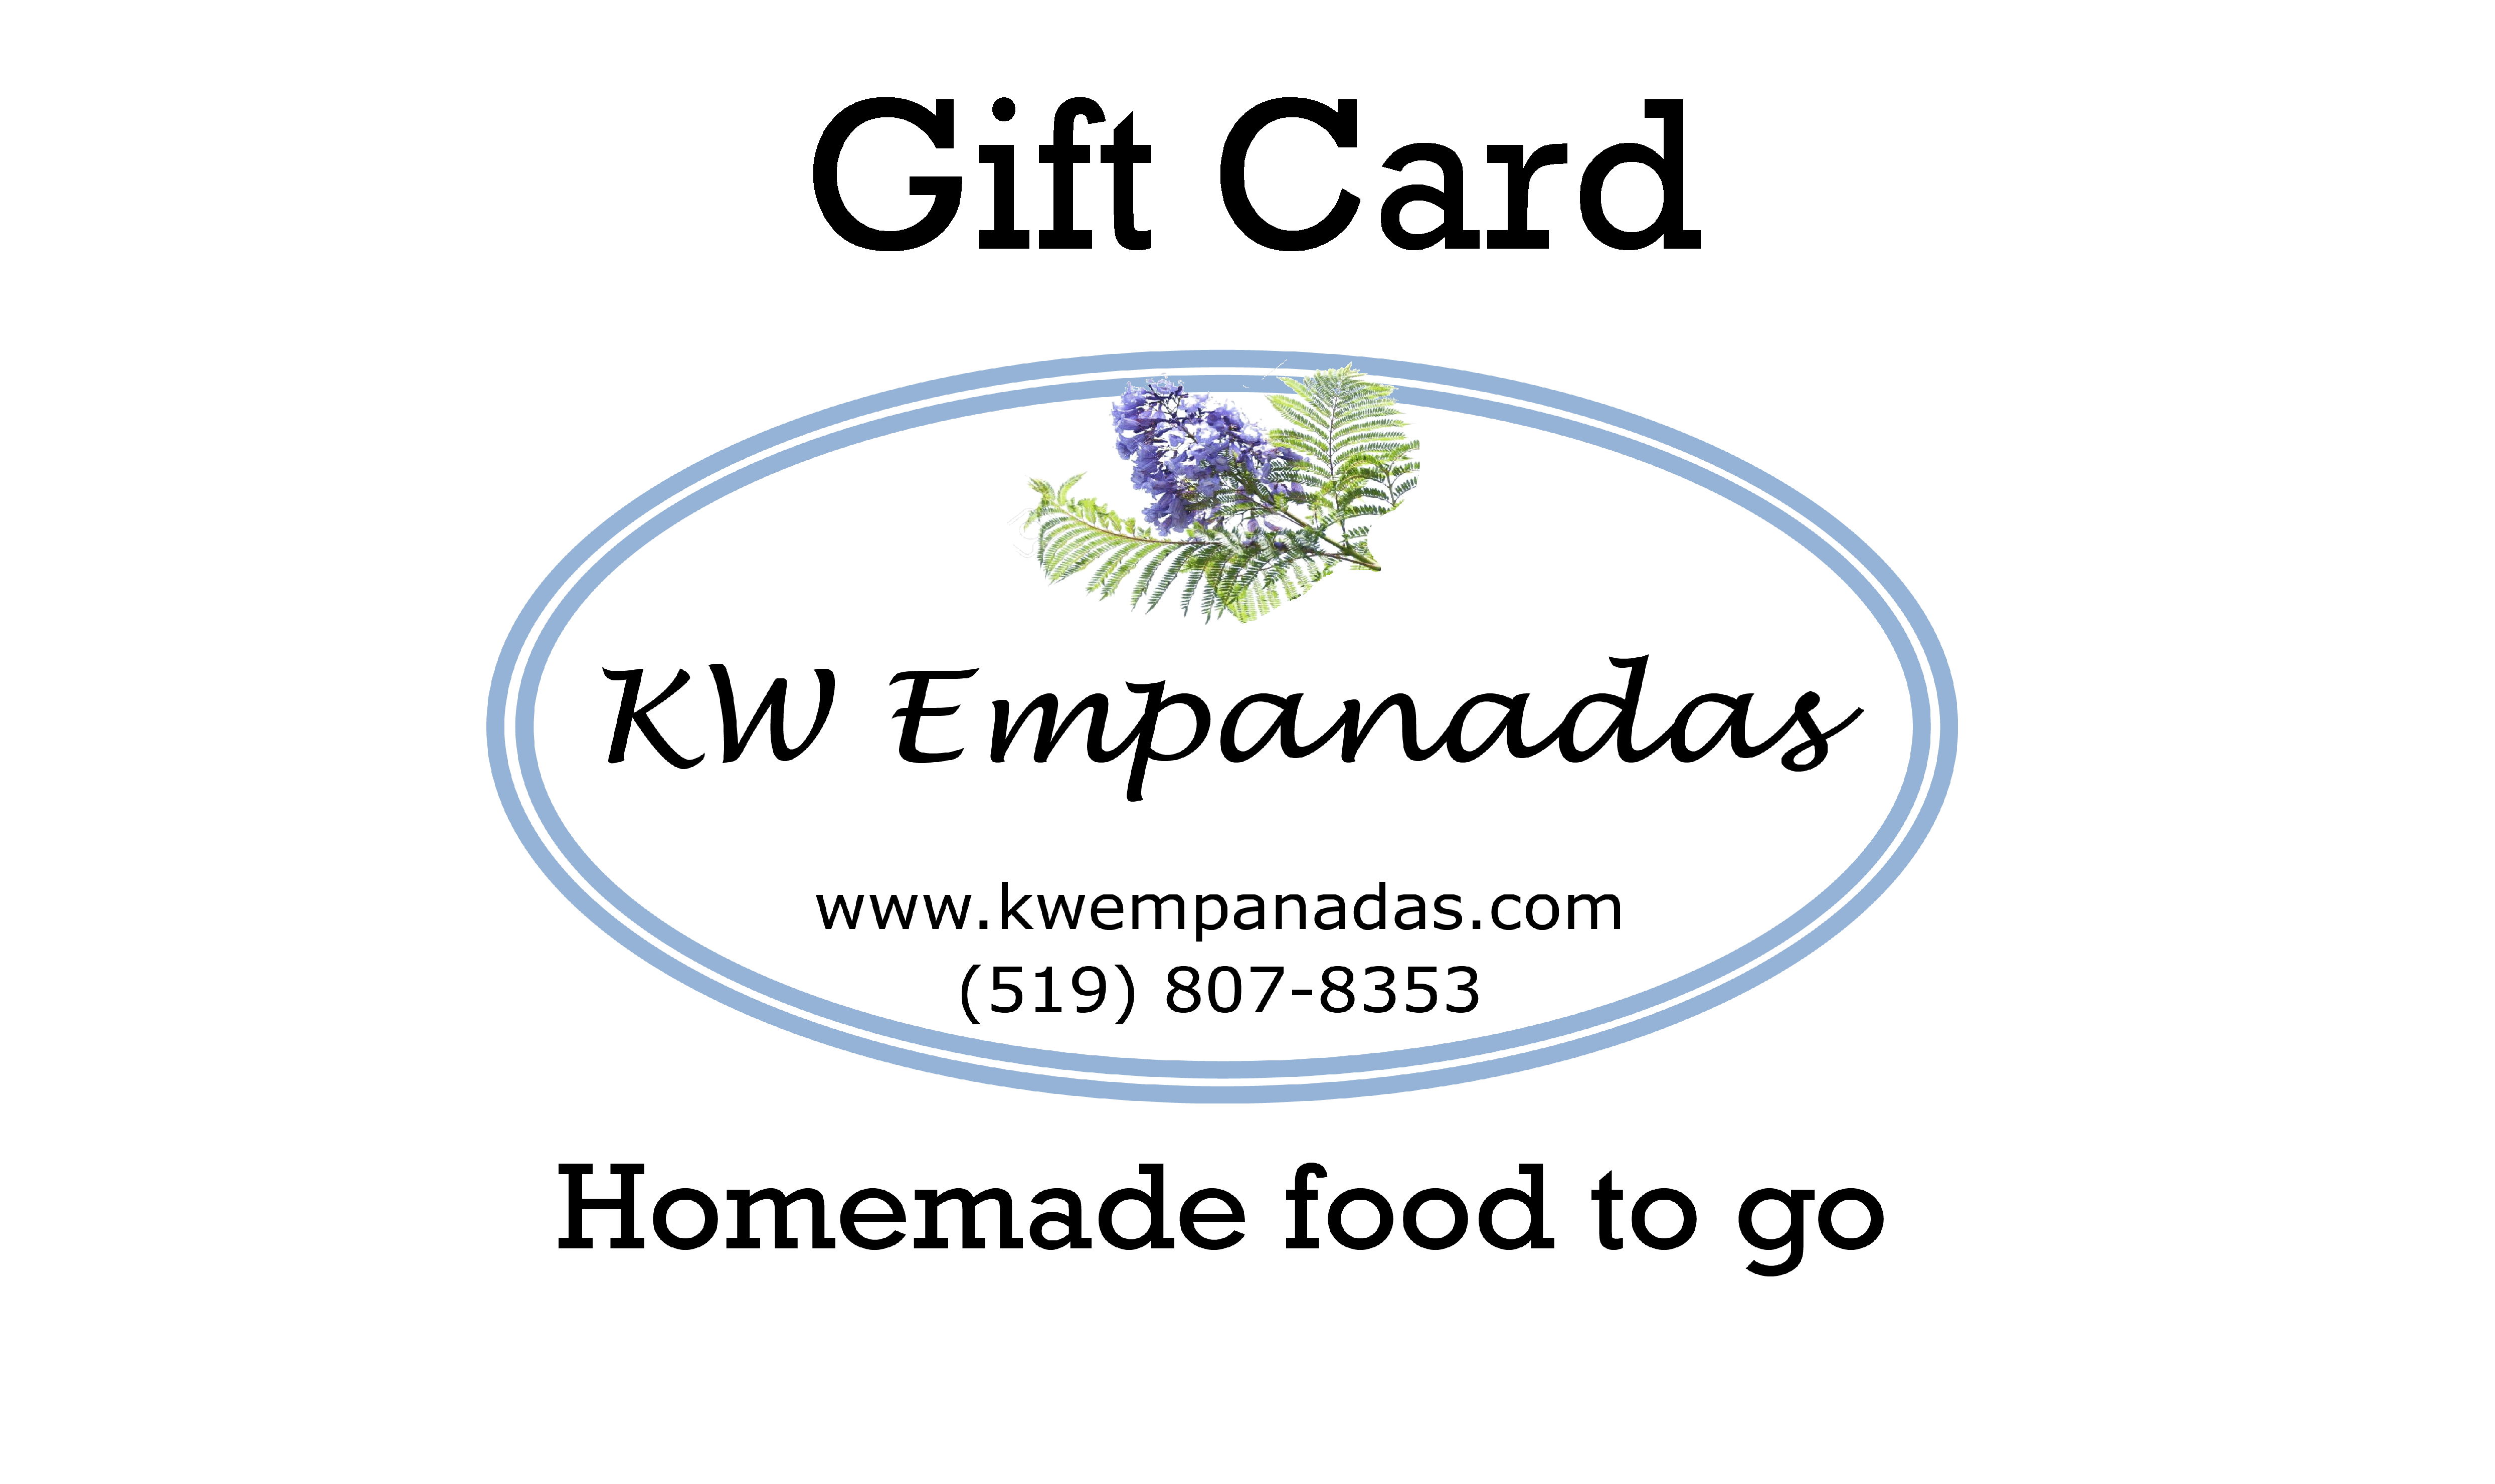 KW Empanadas Gift Card